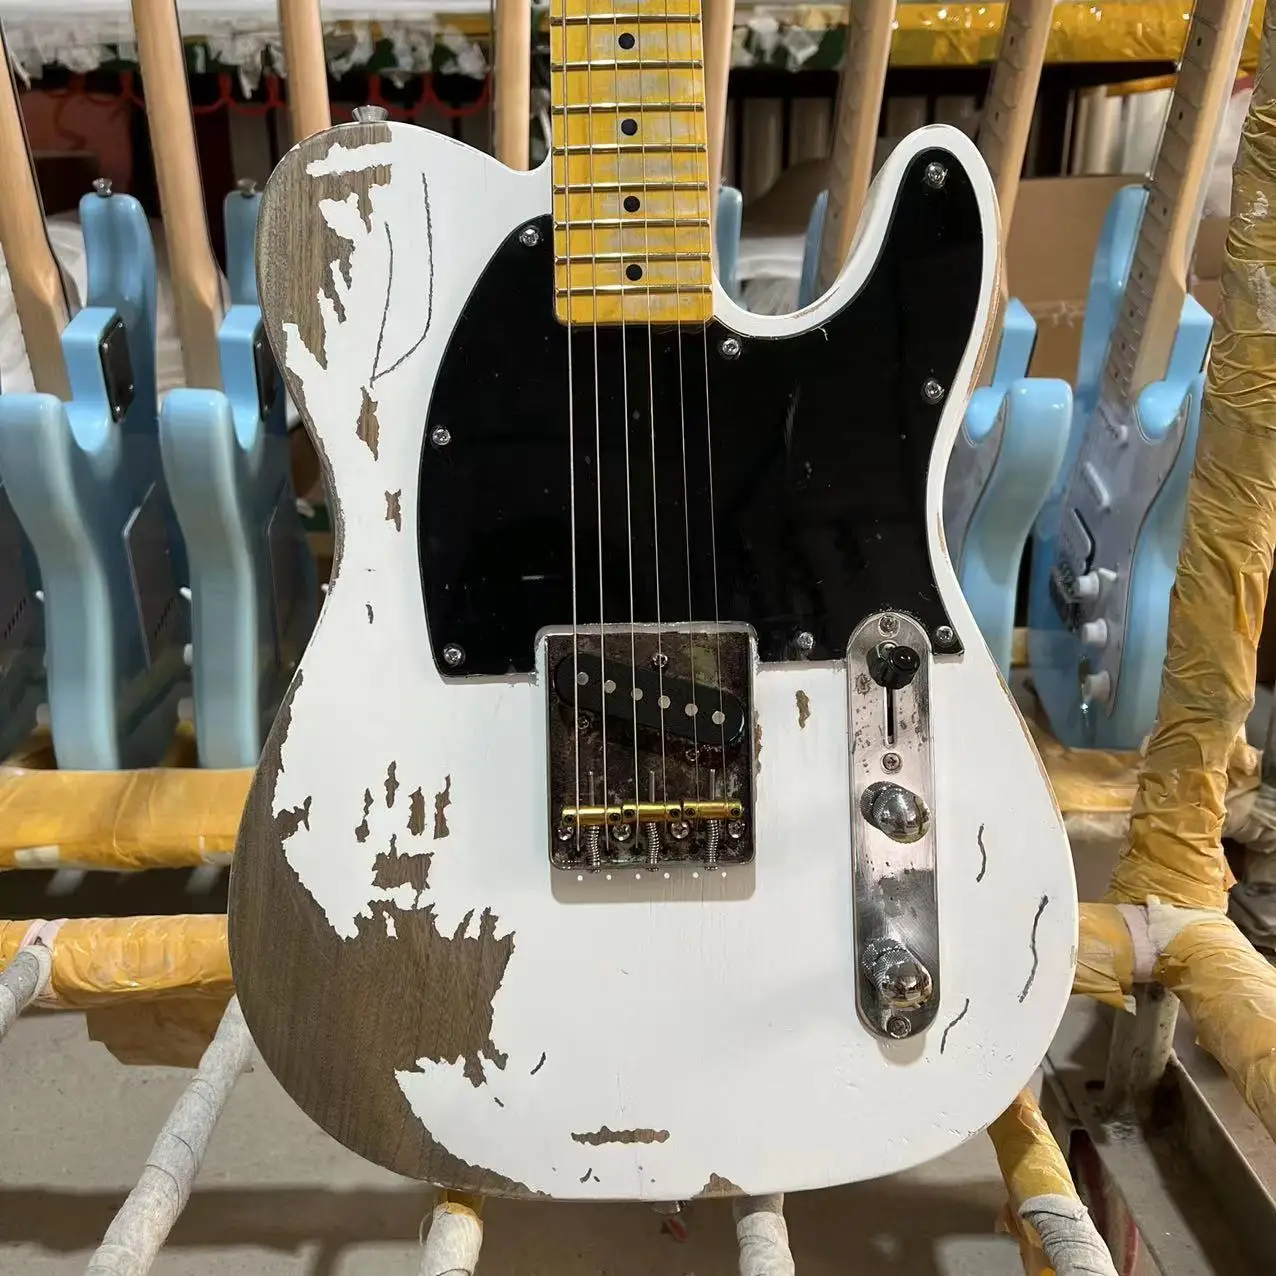 Электрогитара Relic Tele Корпус из ясеня Гриф из клена белого цвета Высококачественная гитара Ra Бесплатная доставка